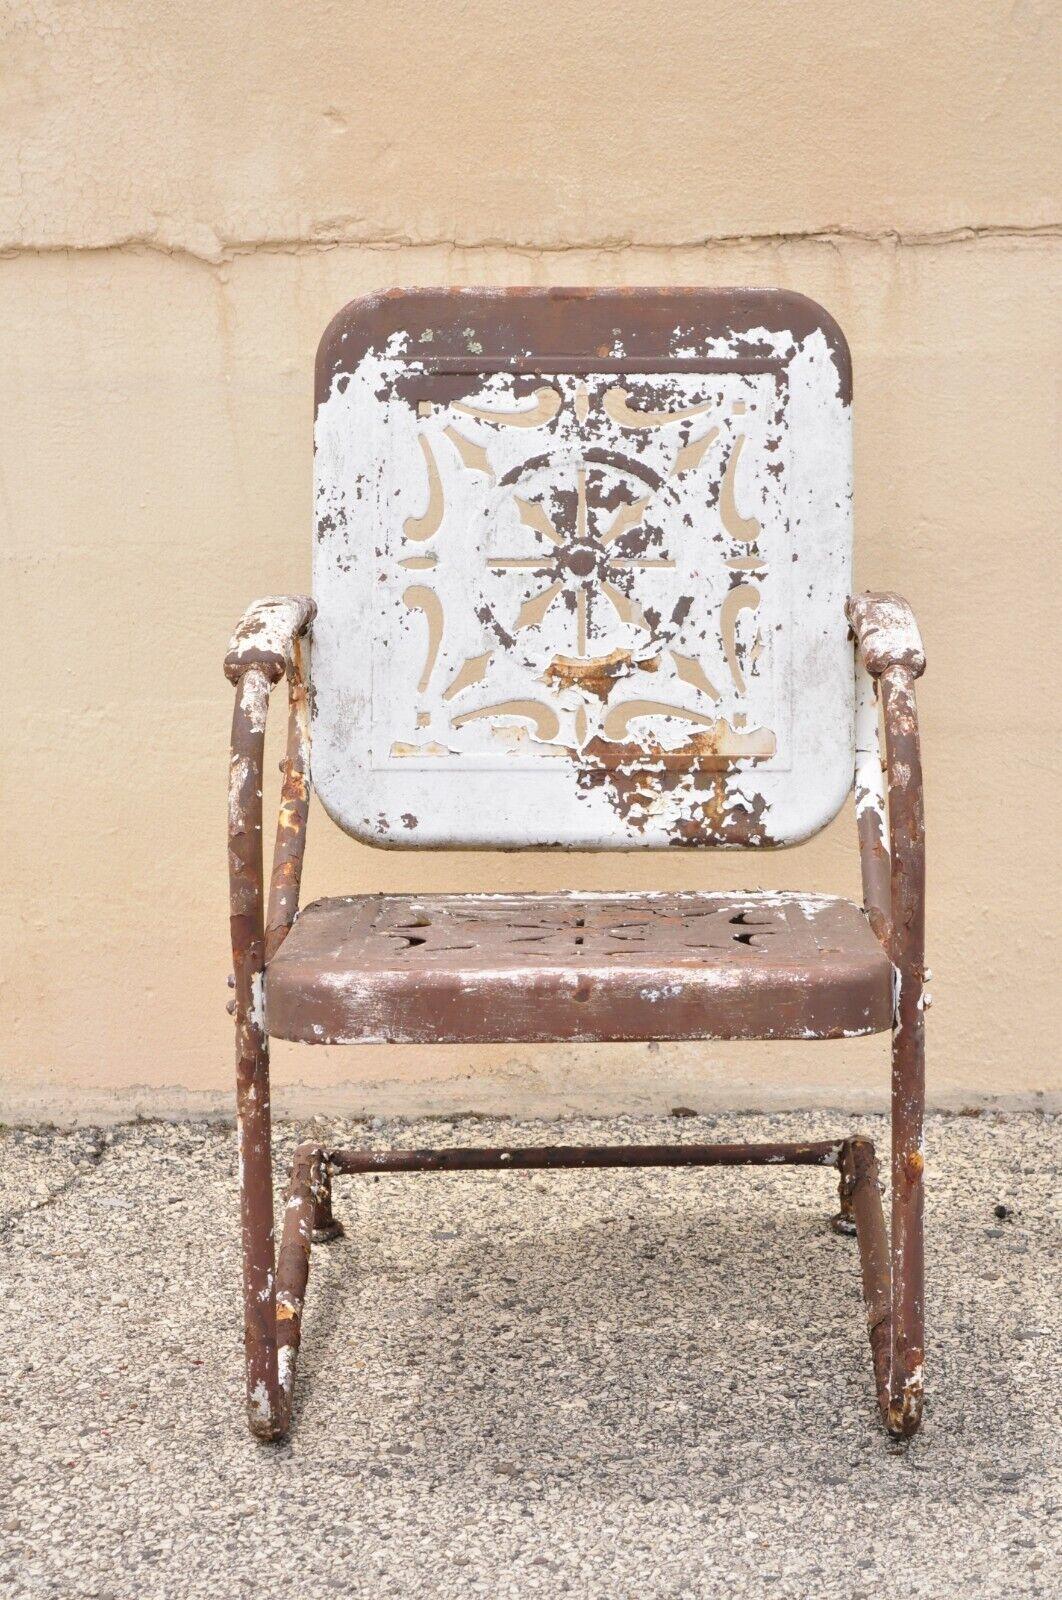 Antique fauteuil de jardin Art Déco en vannerie, peint en brun. Cet article présente un cadre de videur en métal, une finition peinte en brun, un siège et un dossier en forme de panier, un très bel article ancien, un style et une forme remarquables.